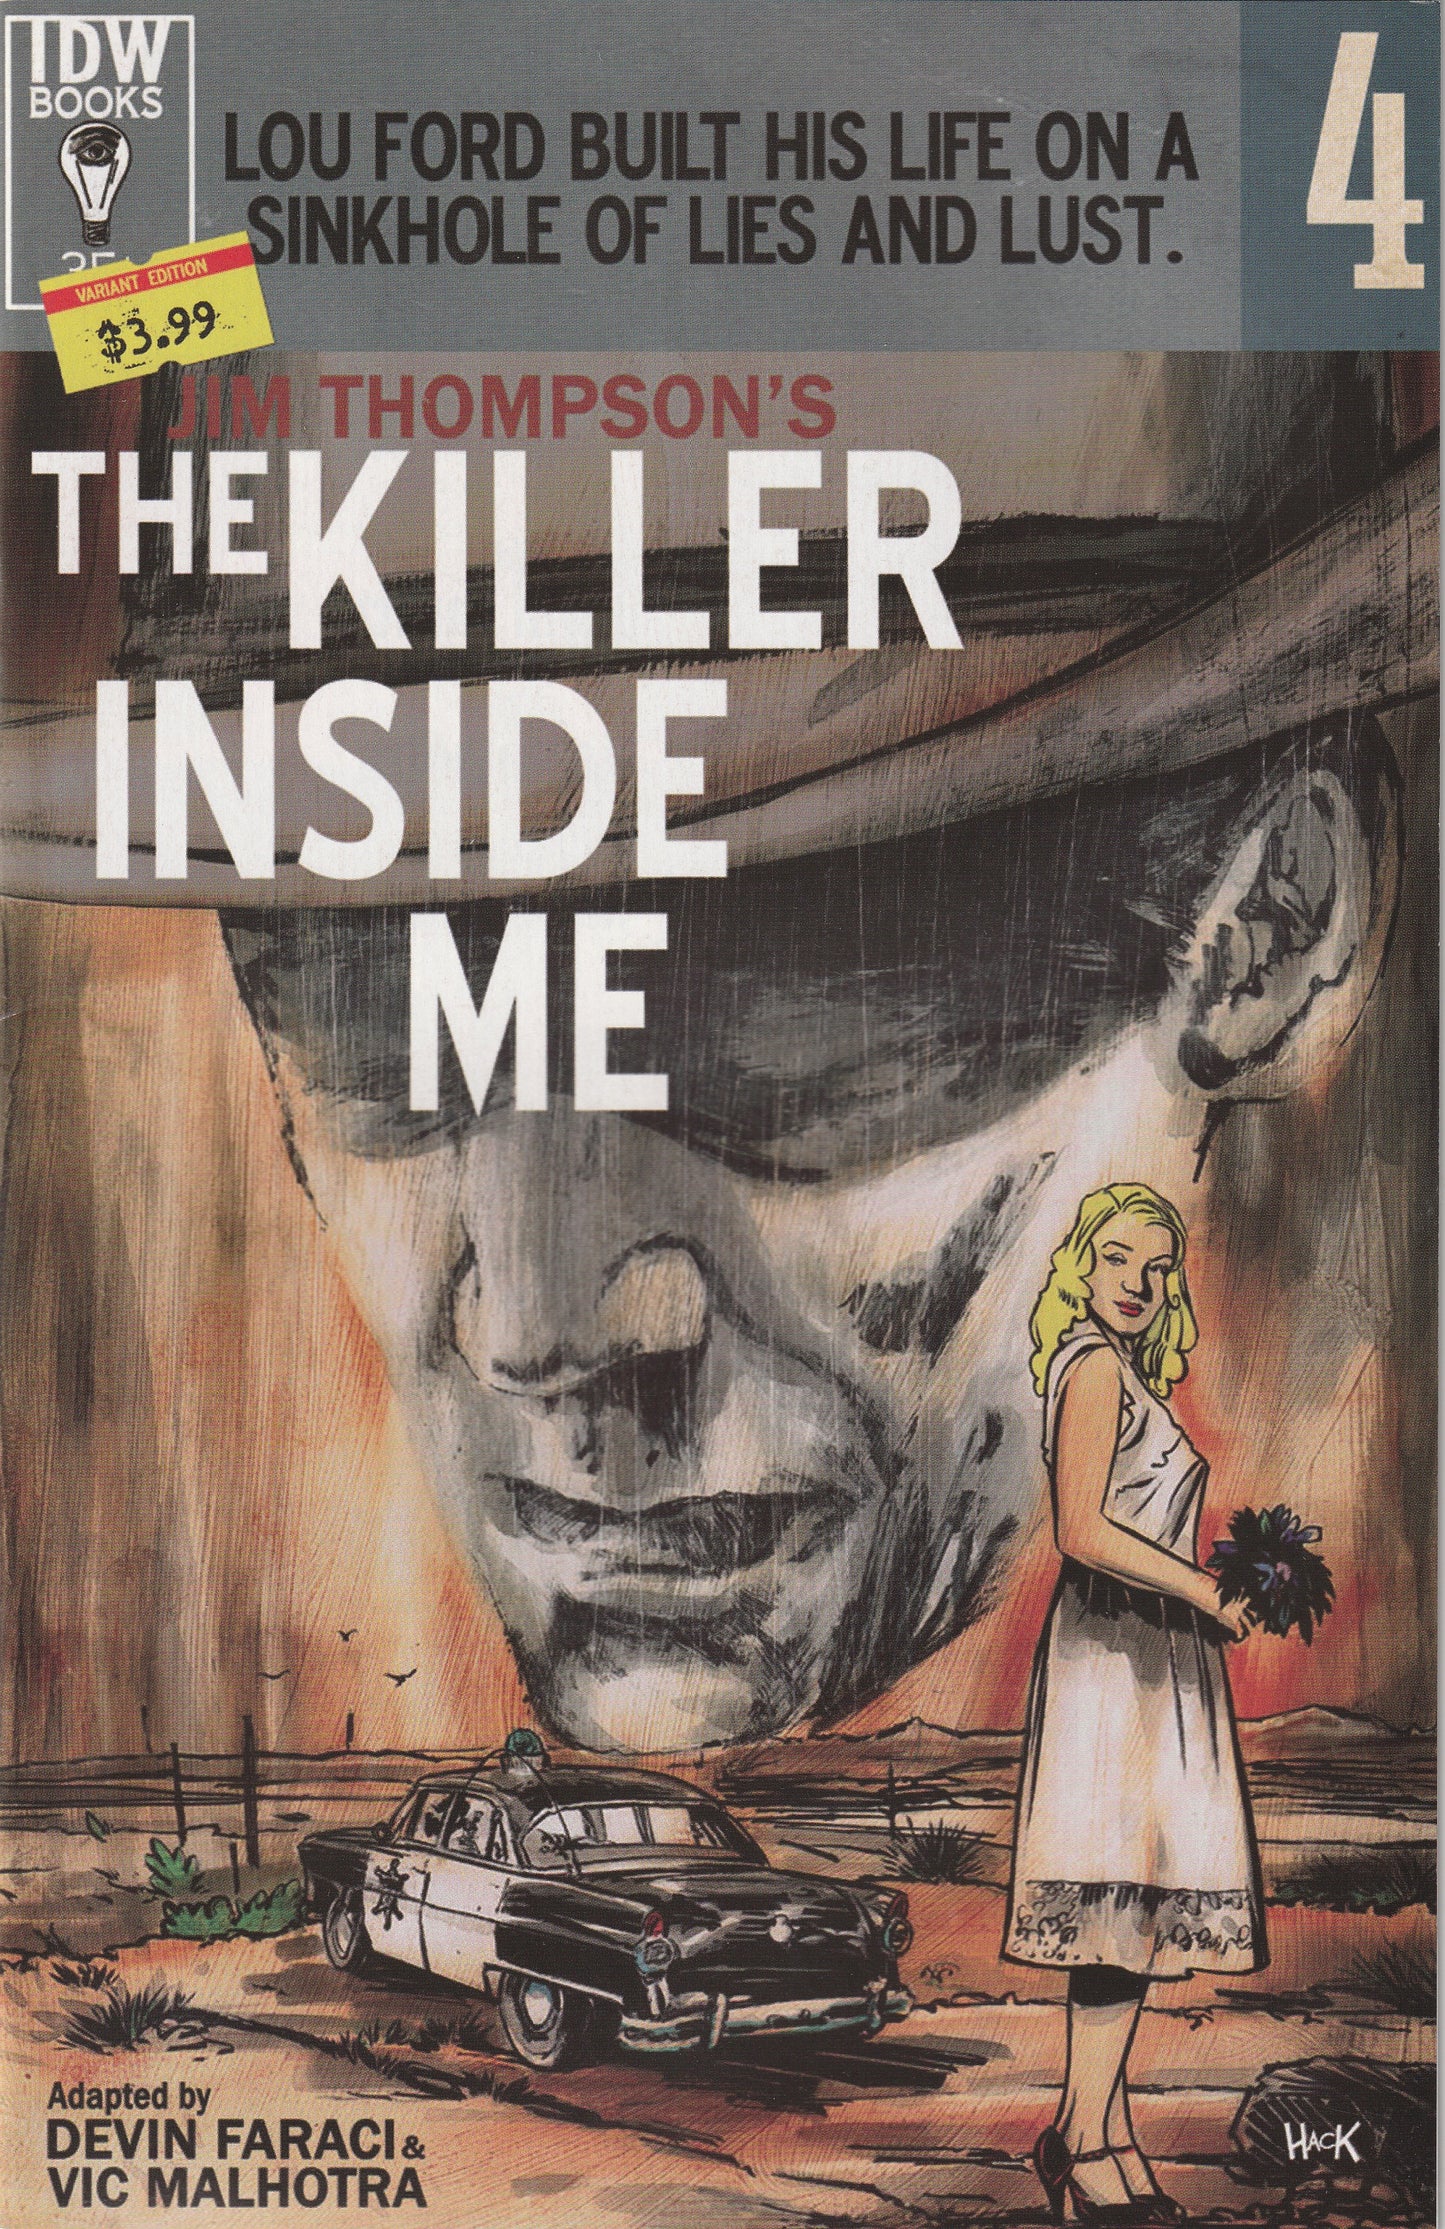 Jim Thompson's The Killer Inside Me #4 (2016) - Robert Hack Subscription Variant Cover